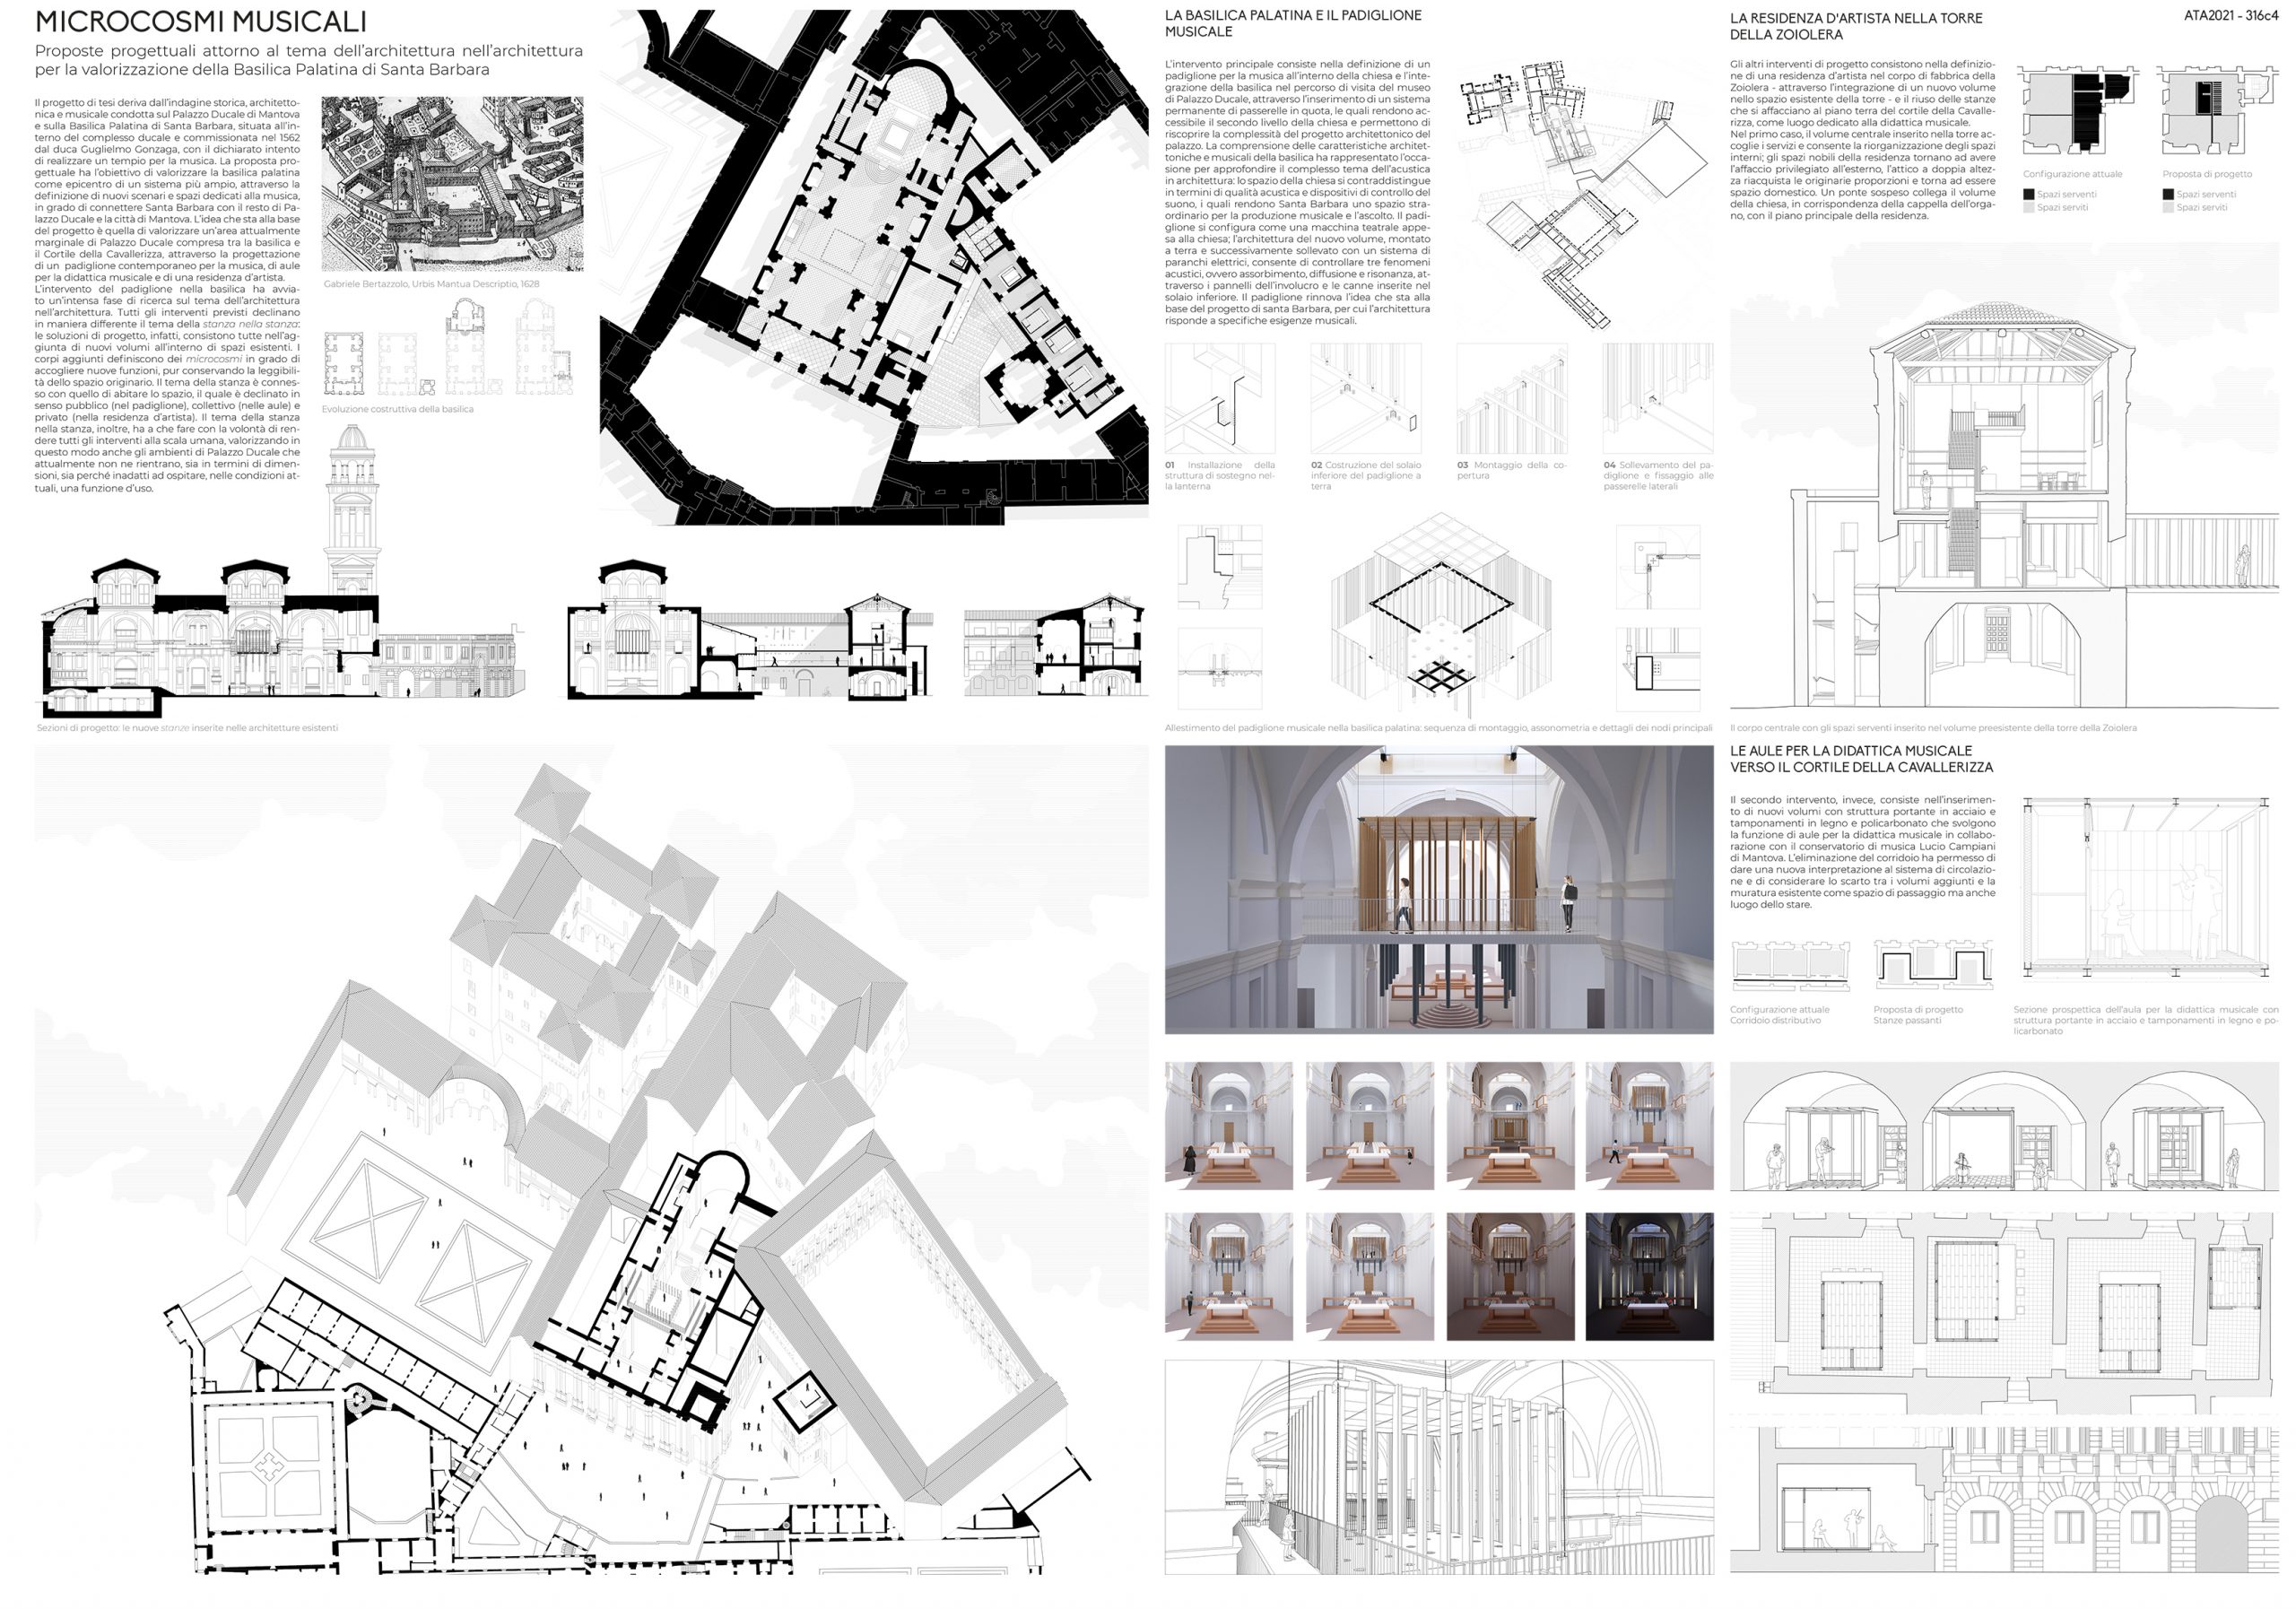 Microcosmi musicali. Proposte progettuali attorno al tema dell’architettura nell’architettura per la valorizzazione della Basilica Palatina di Santa Barbara Board